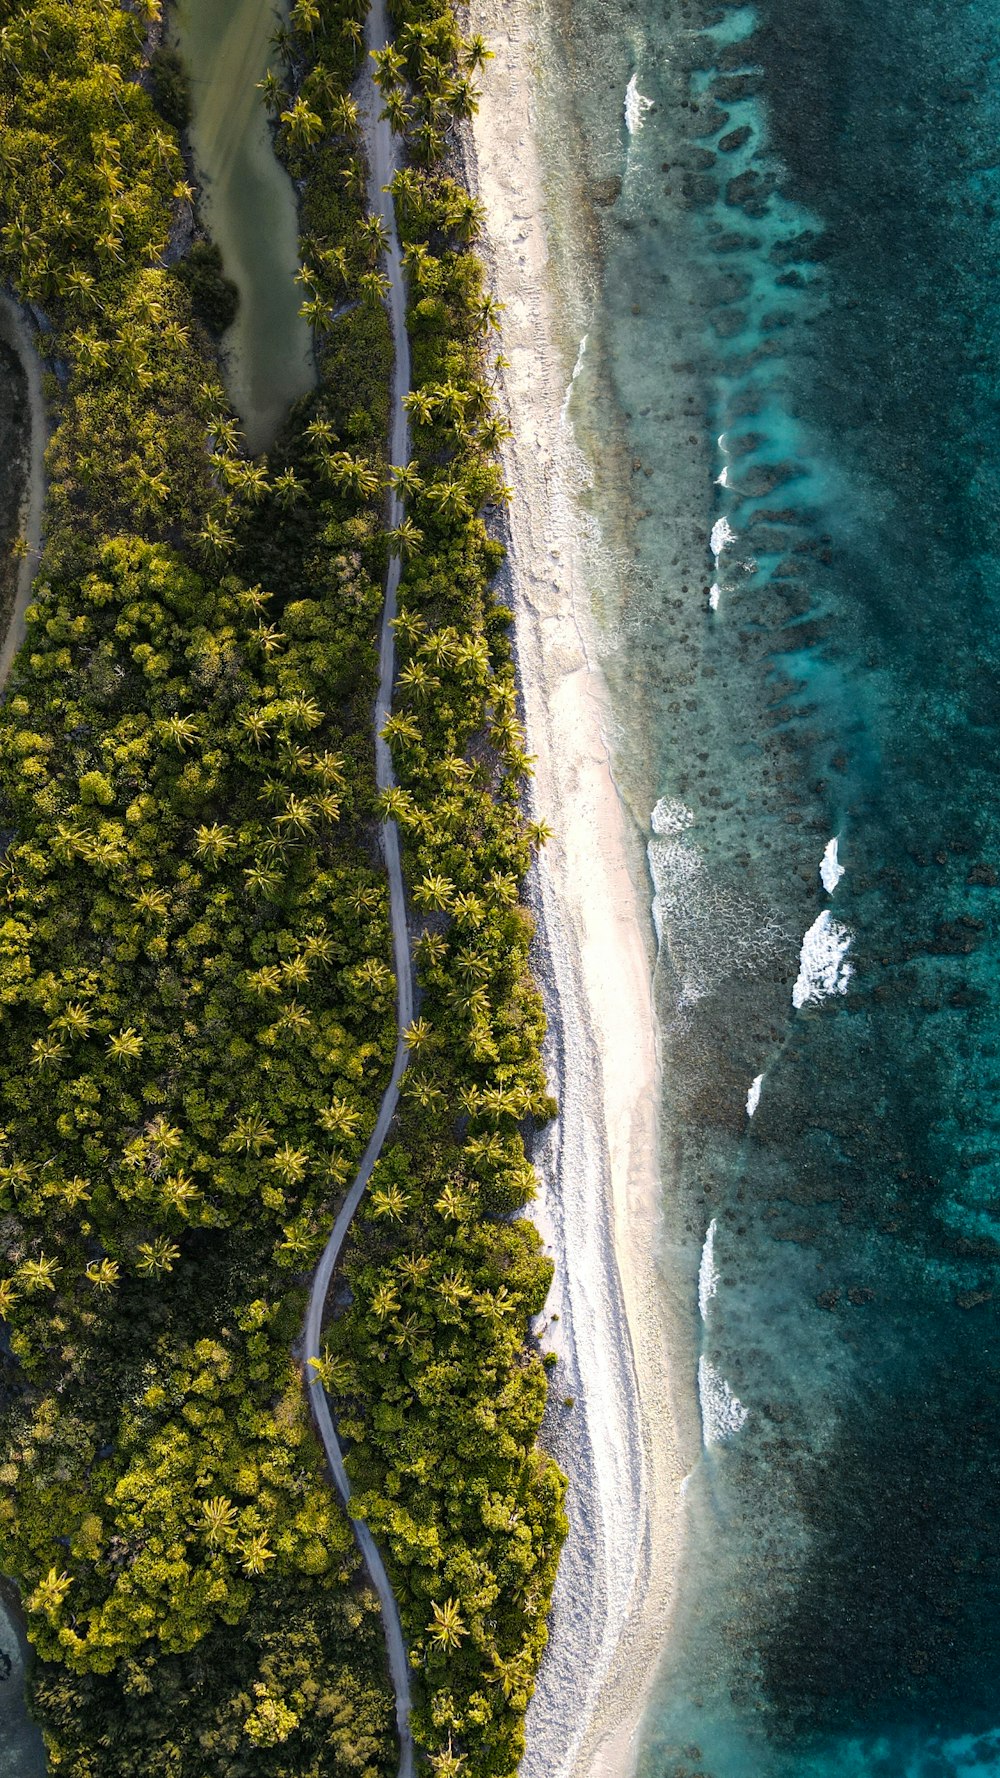 Una vista aérea de una playa y árboles